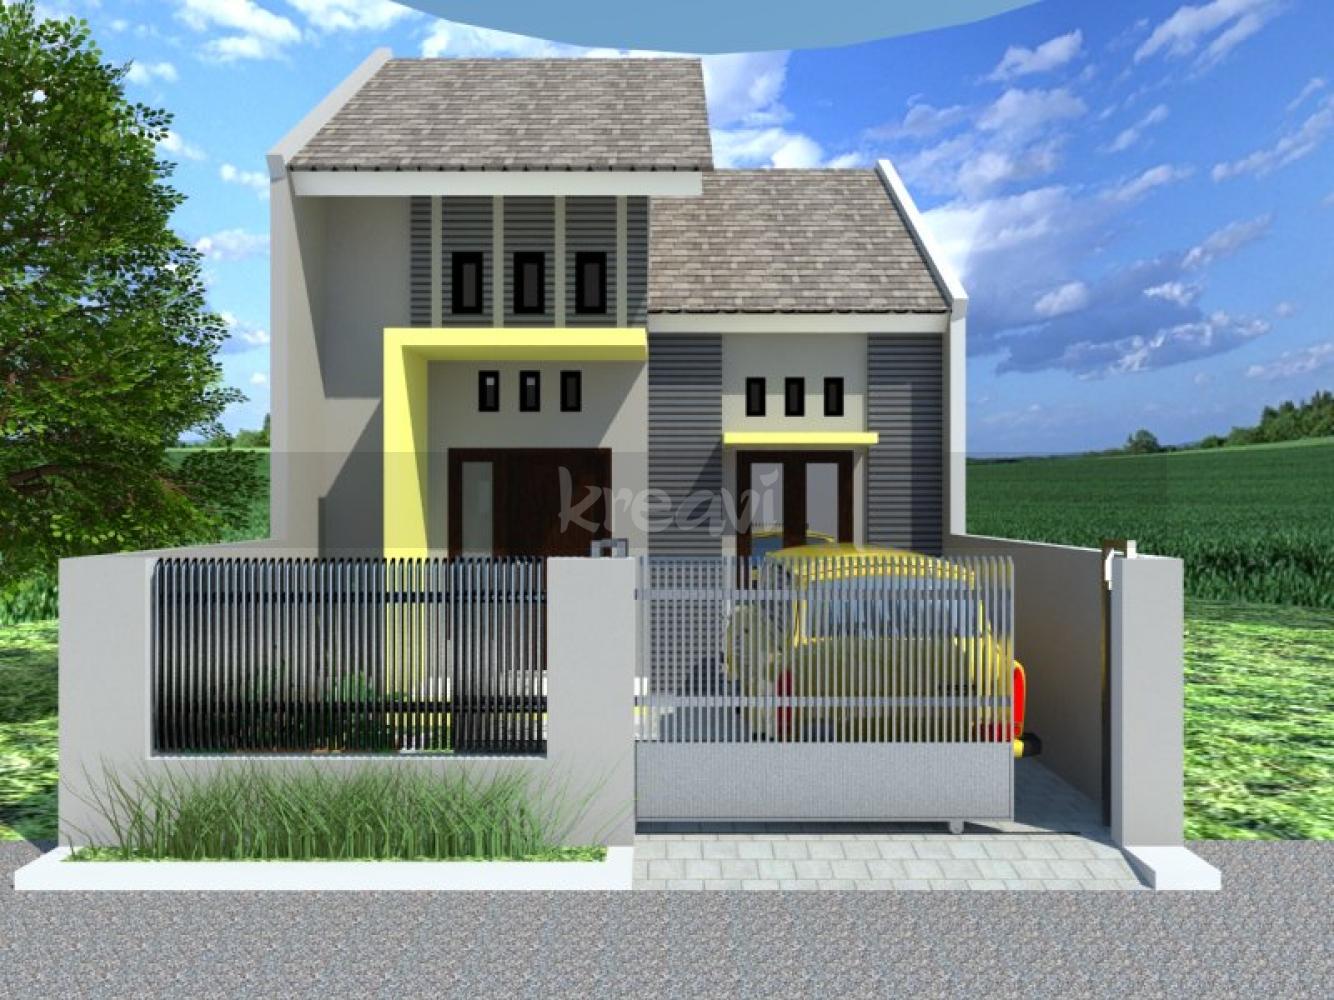 Contoh Model Gambar Desain Rumah Minimalis Wwwbangunrumahmascom